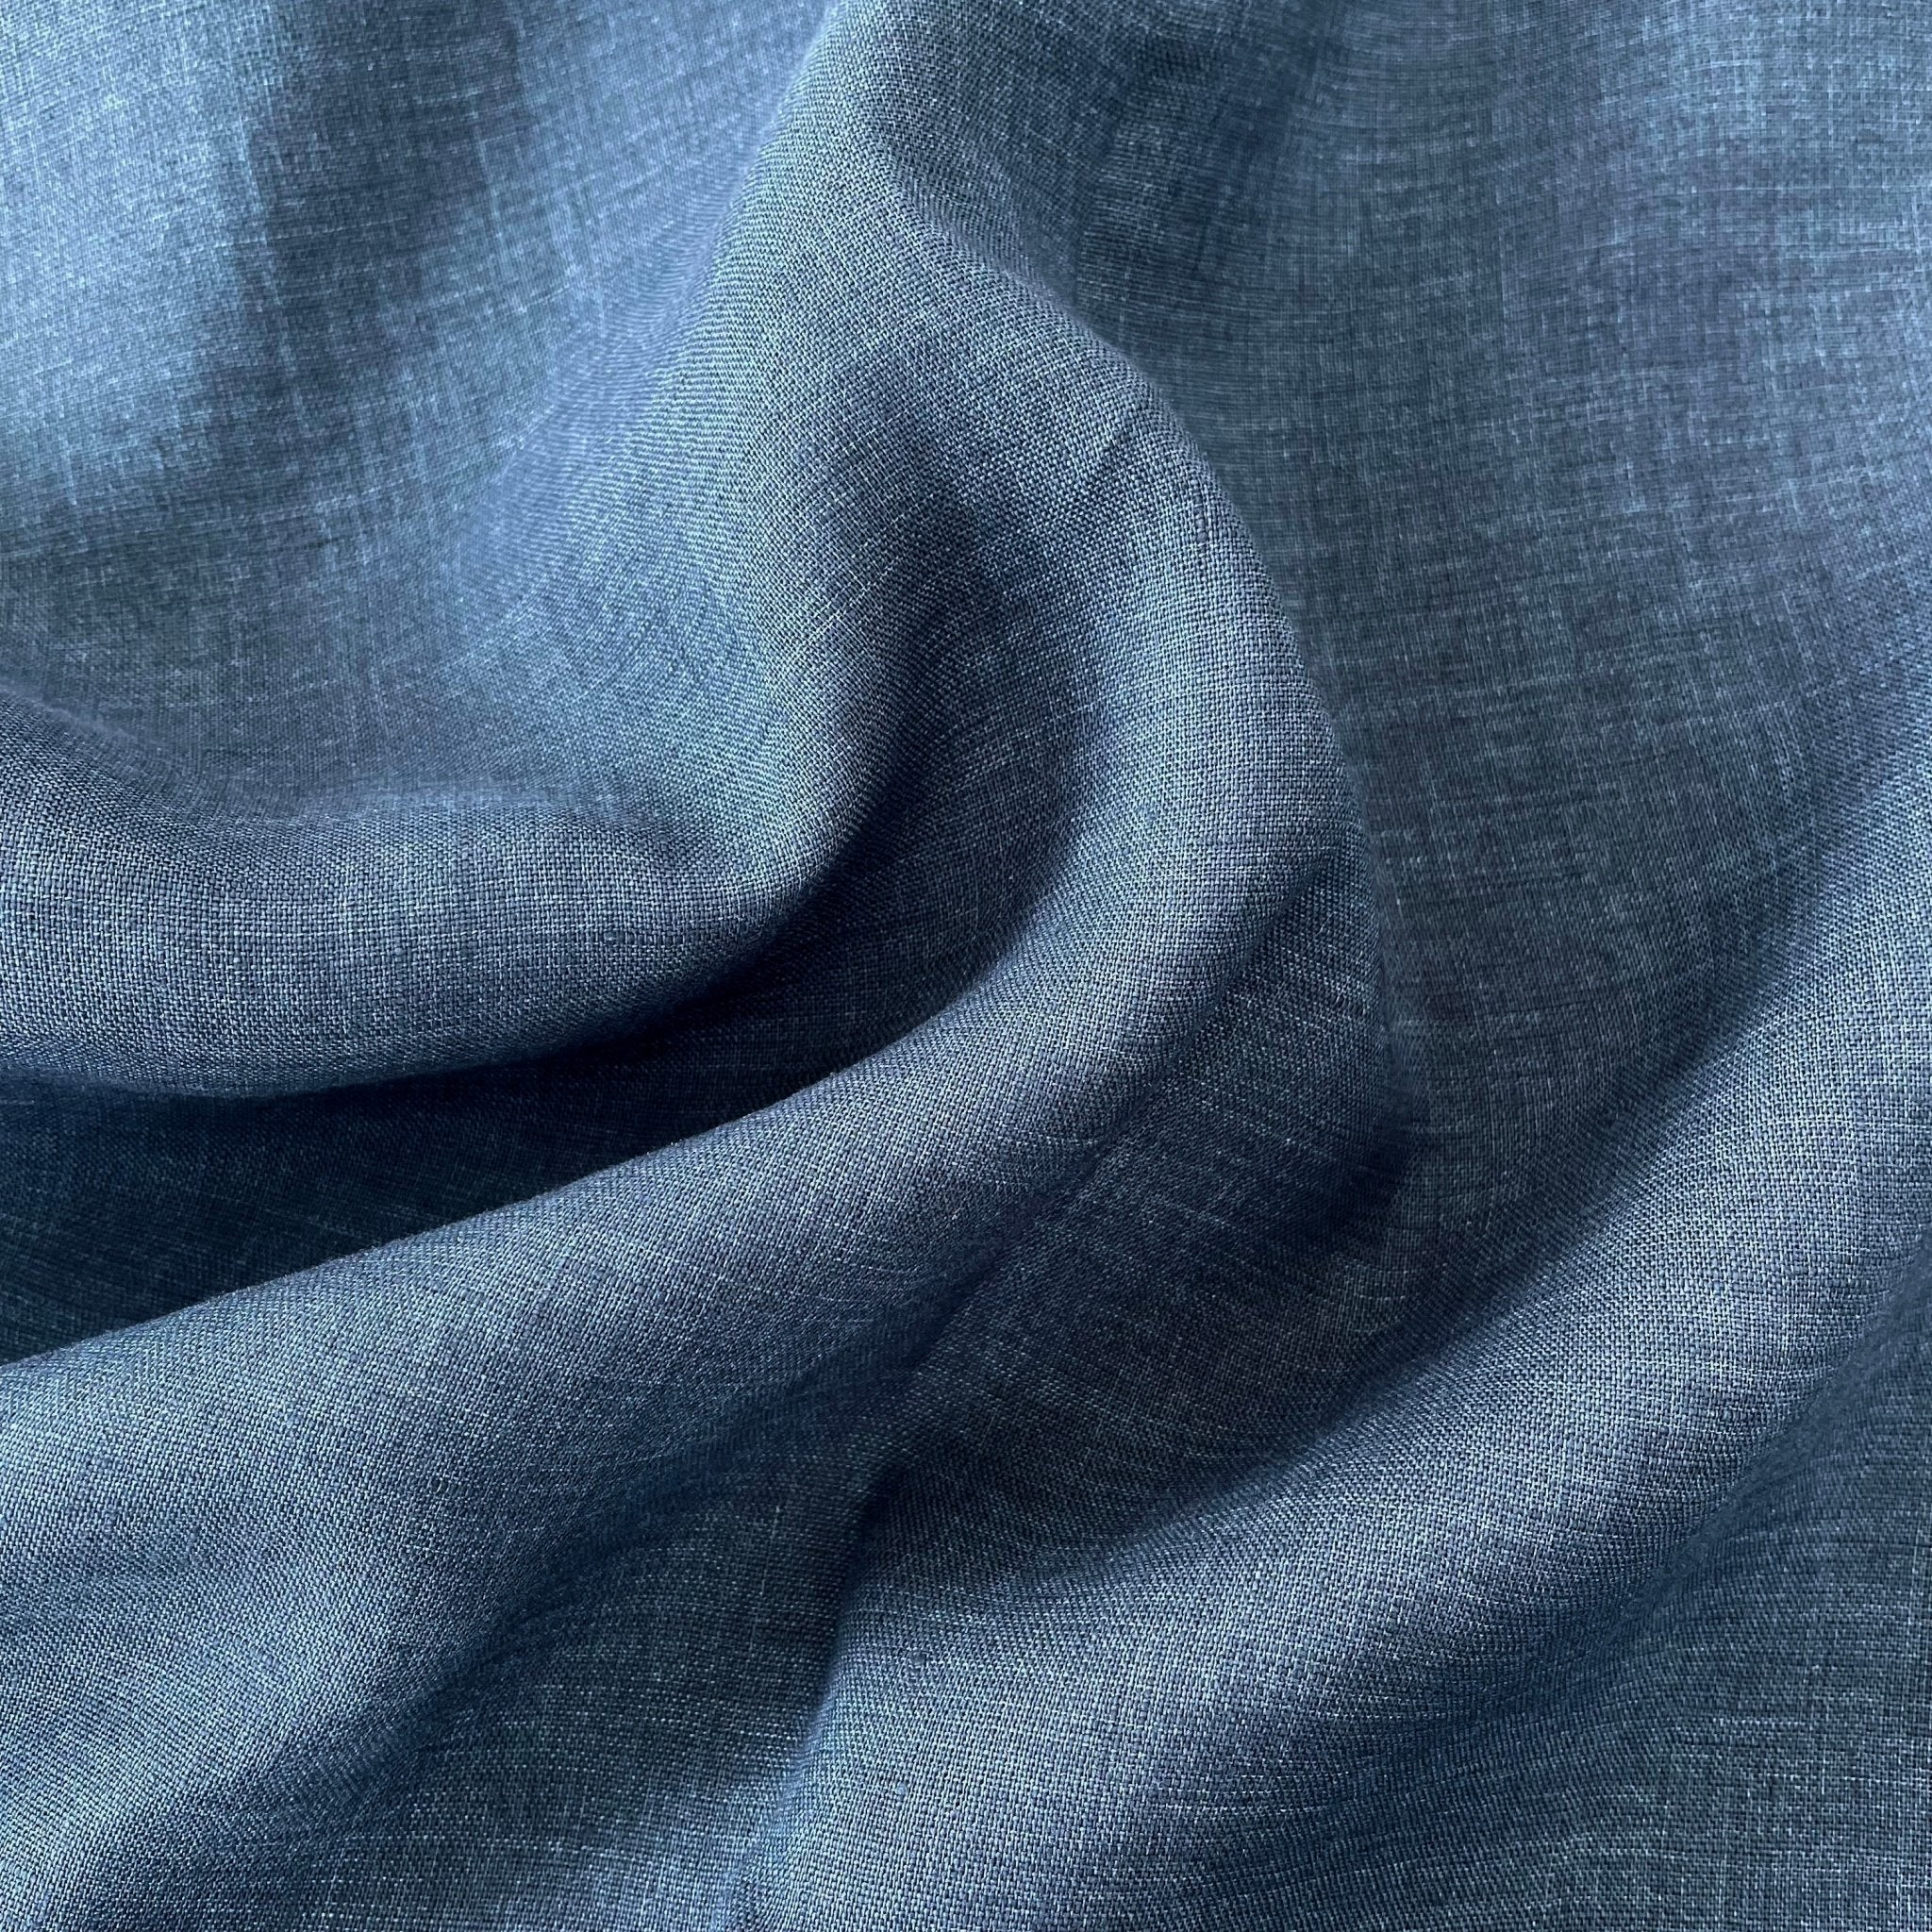 Linen Fabric Light Weight Soft Touch 21S 7115 7031 6785 6271 - The Linen Lab - Blue